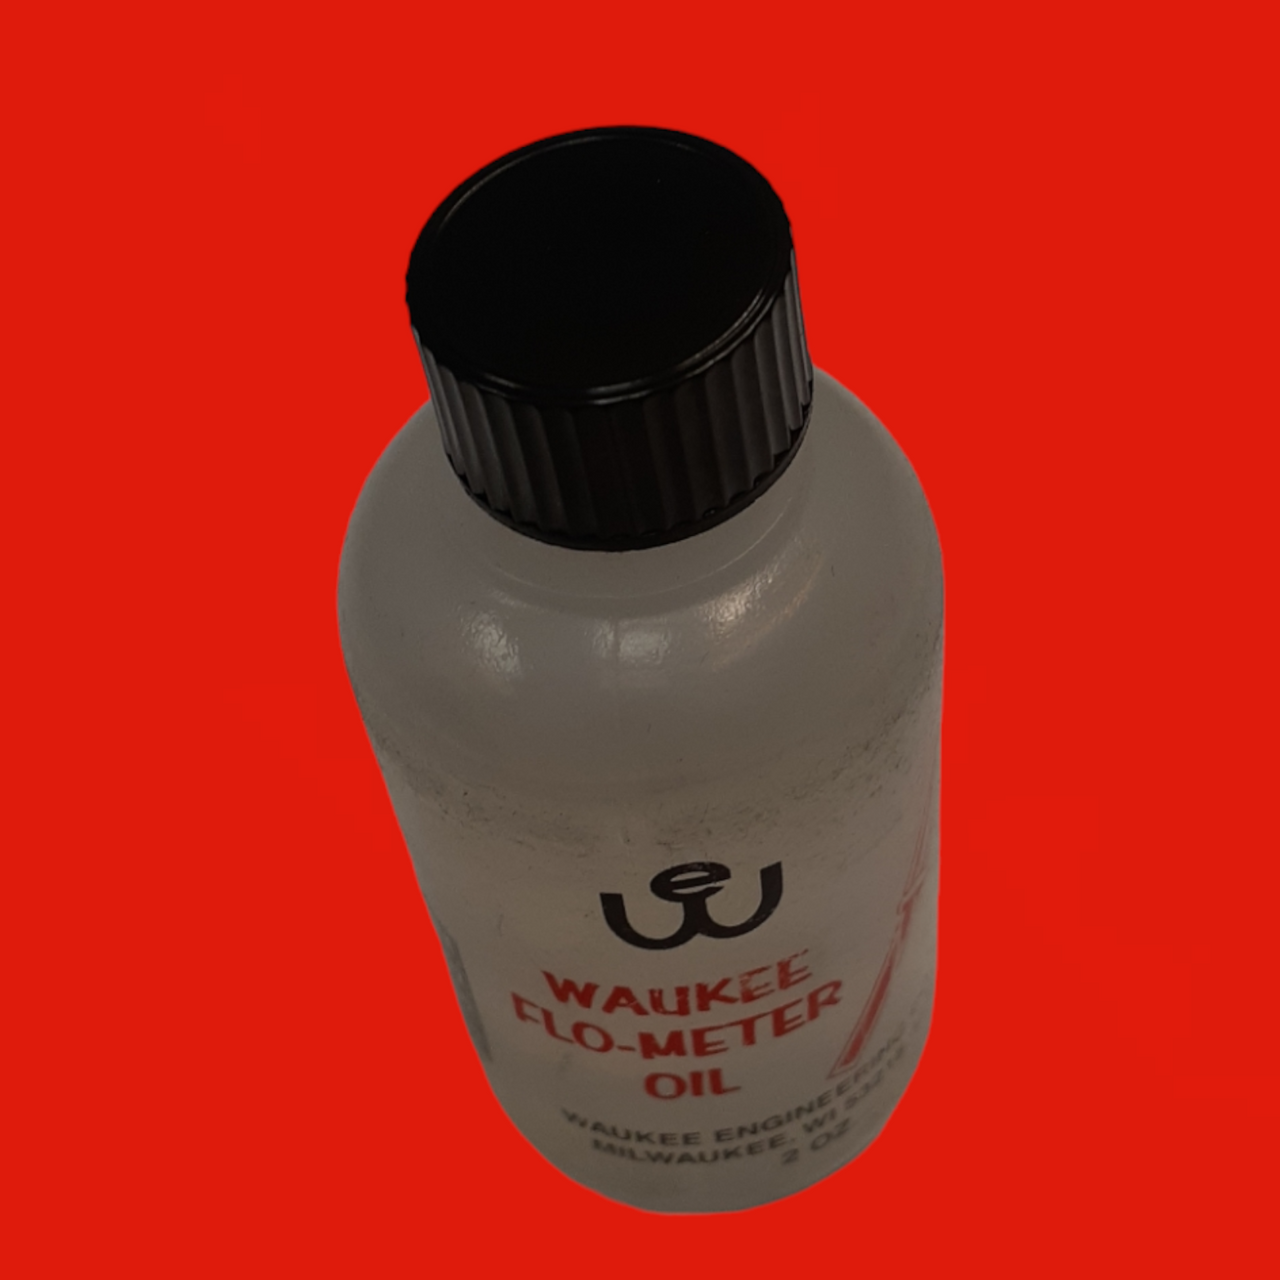 Waukee Flo-Meter Oil, 2oz. Bottle